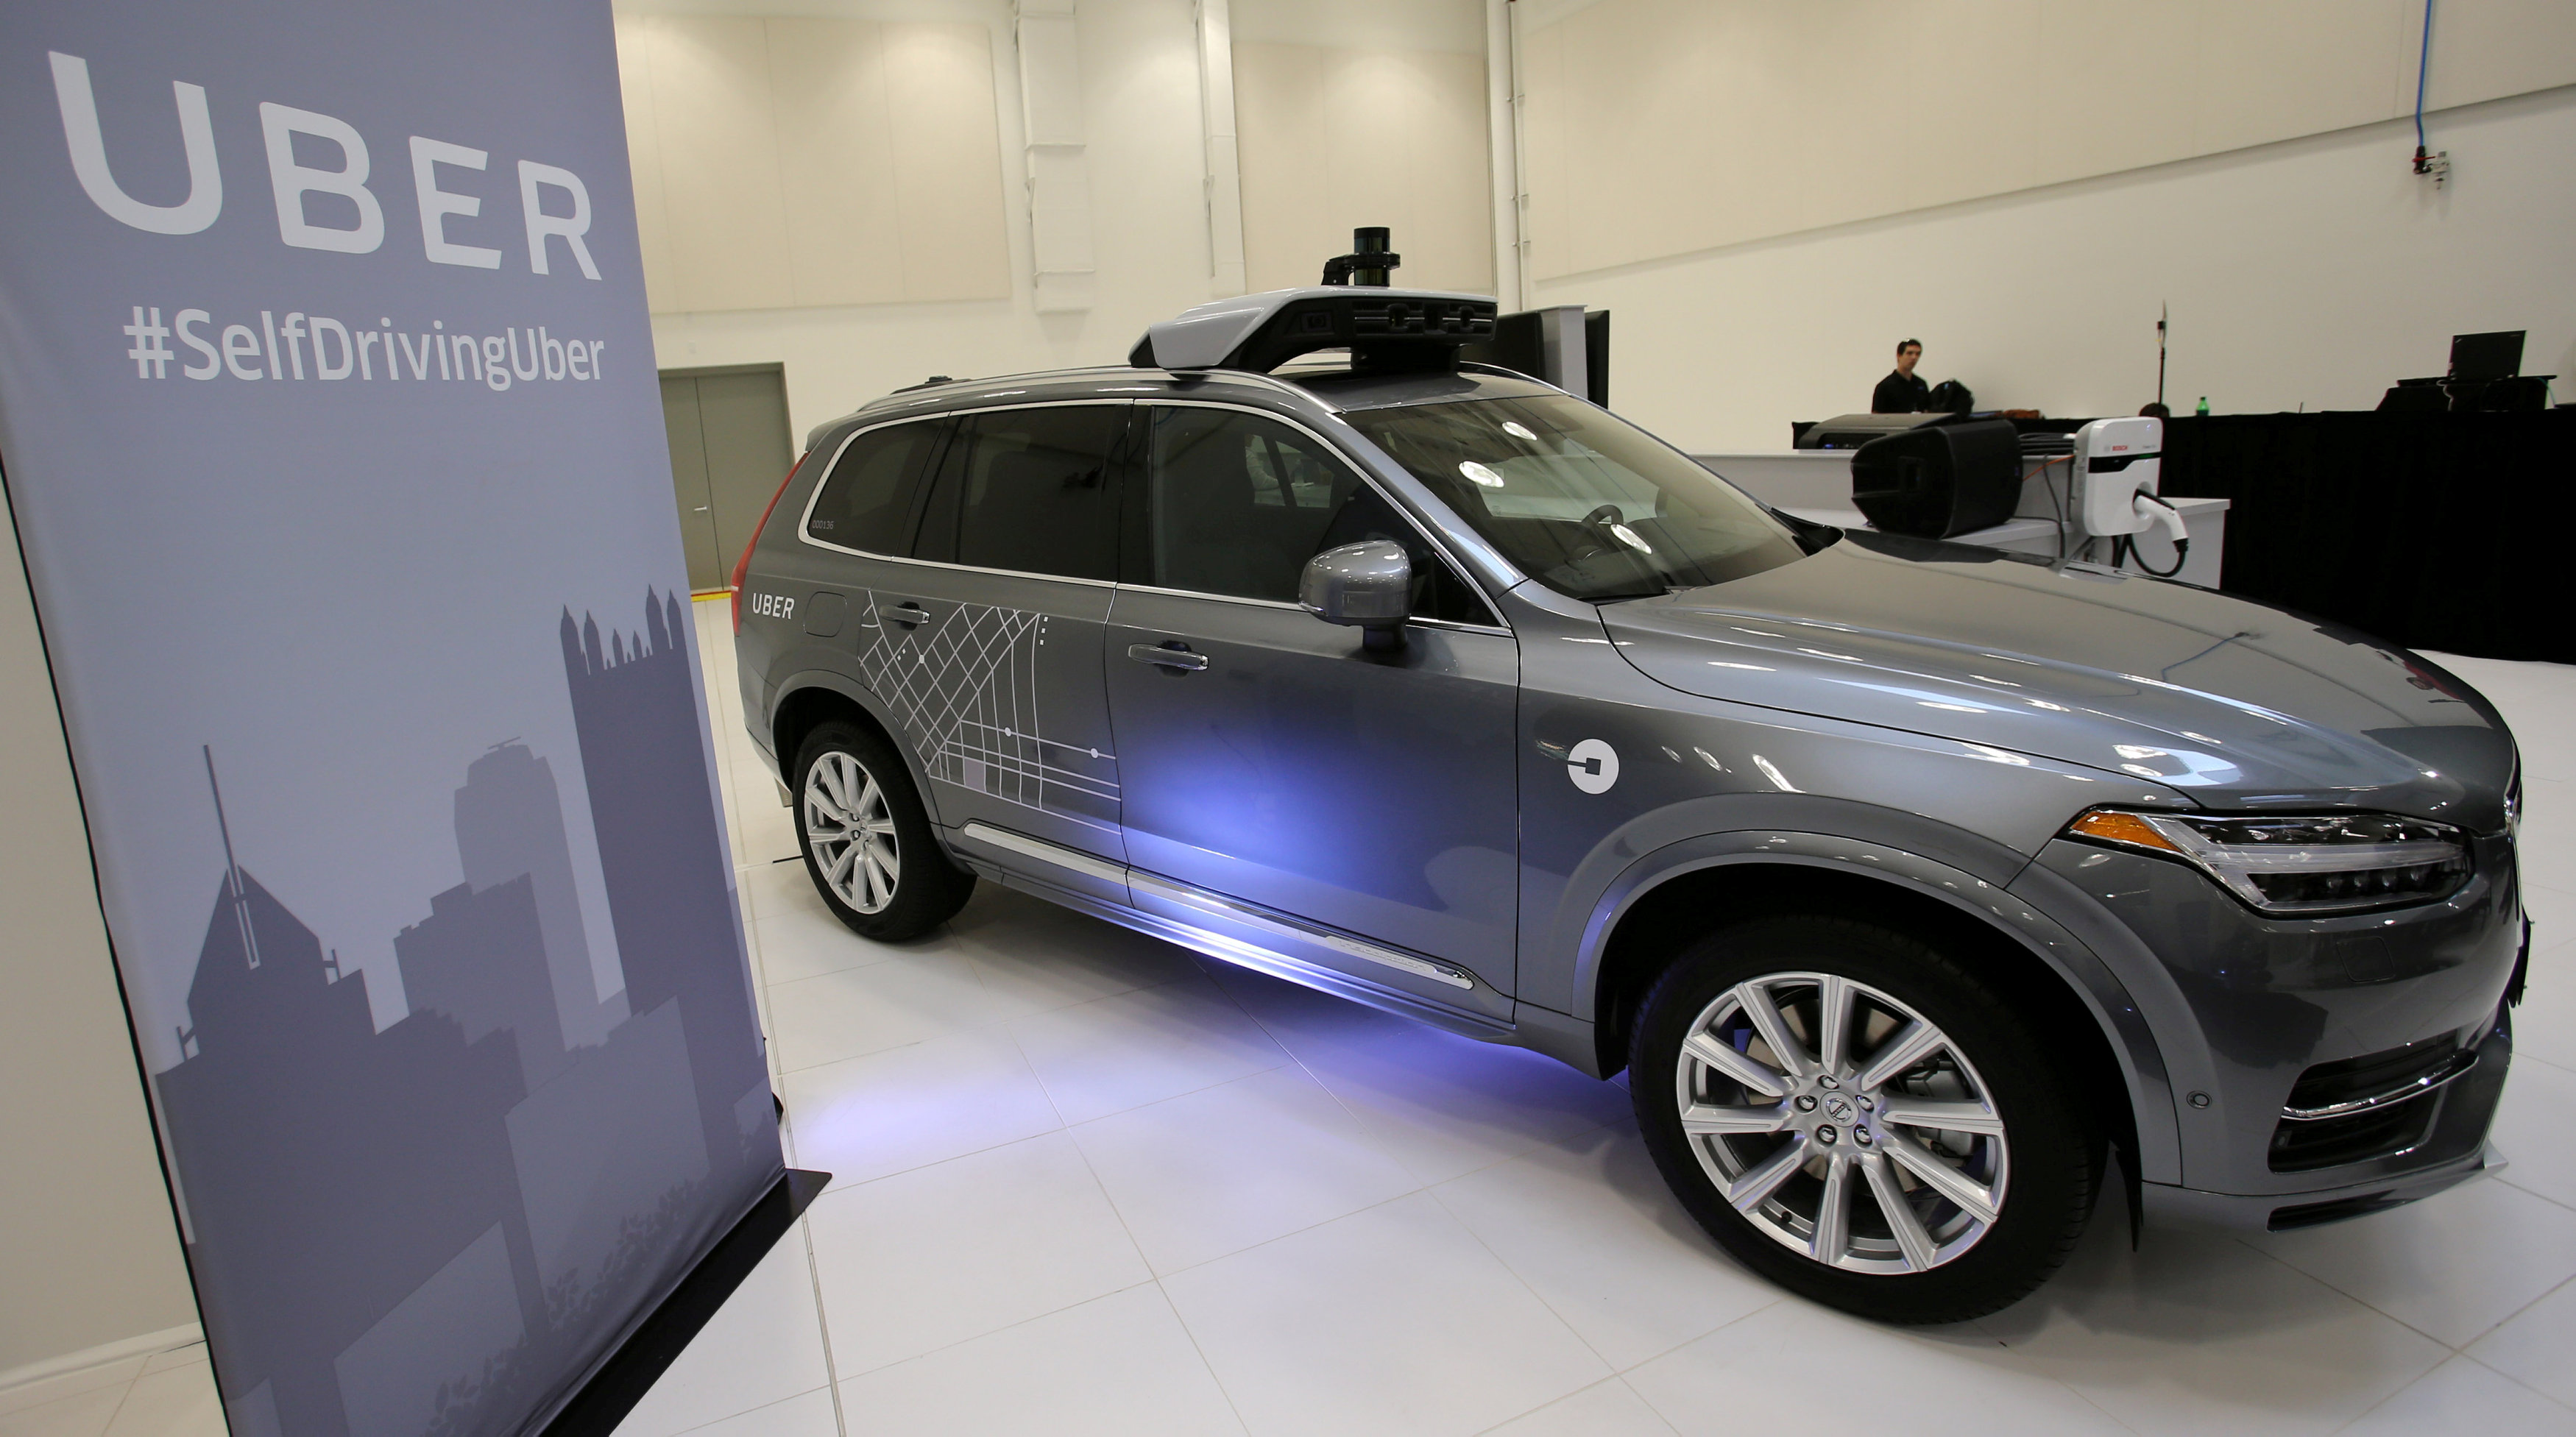 Volvo venderá autos autónomos a Uber